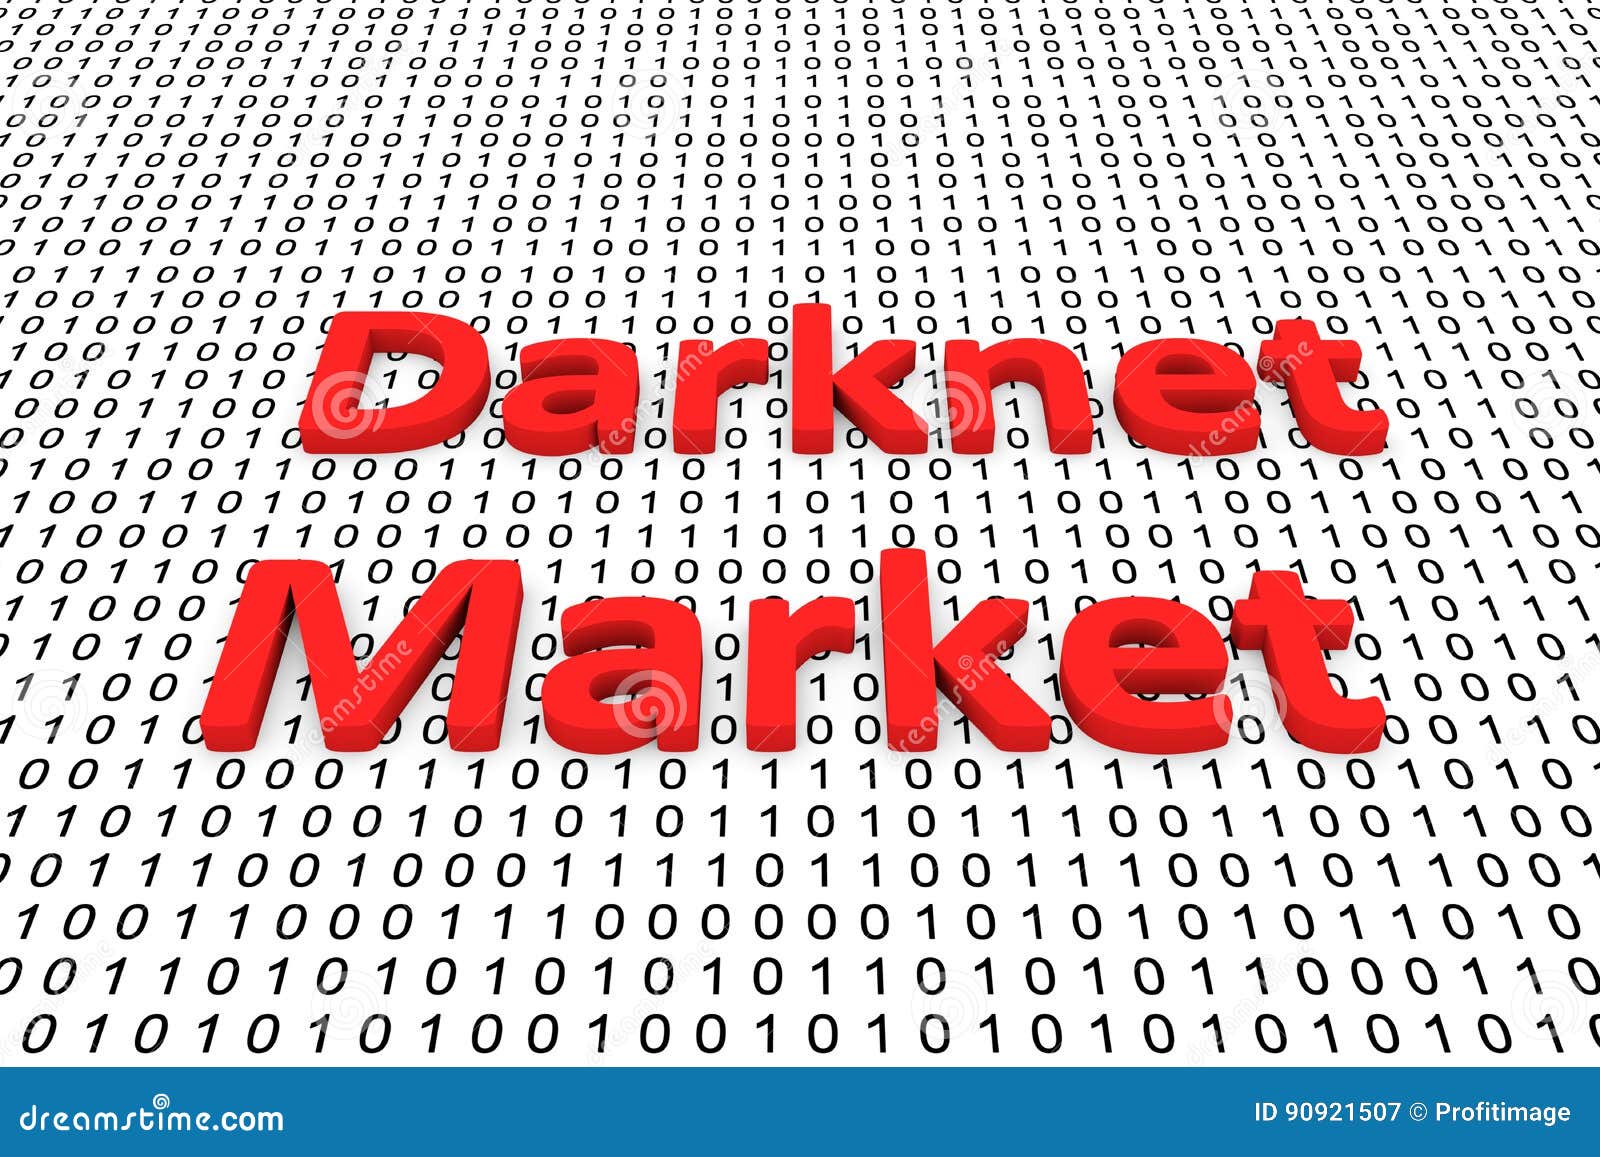 Wallstreet Market Darknet